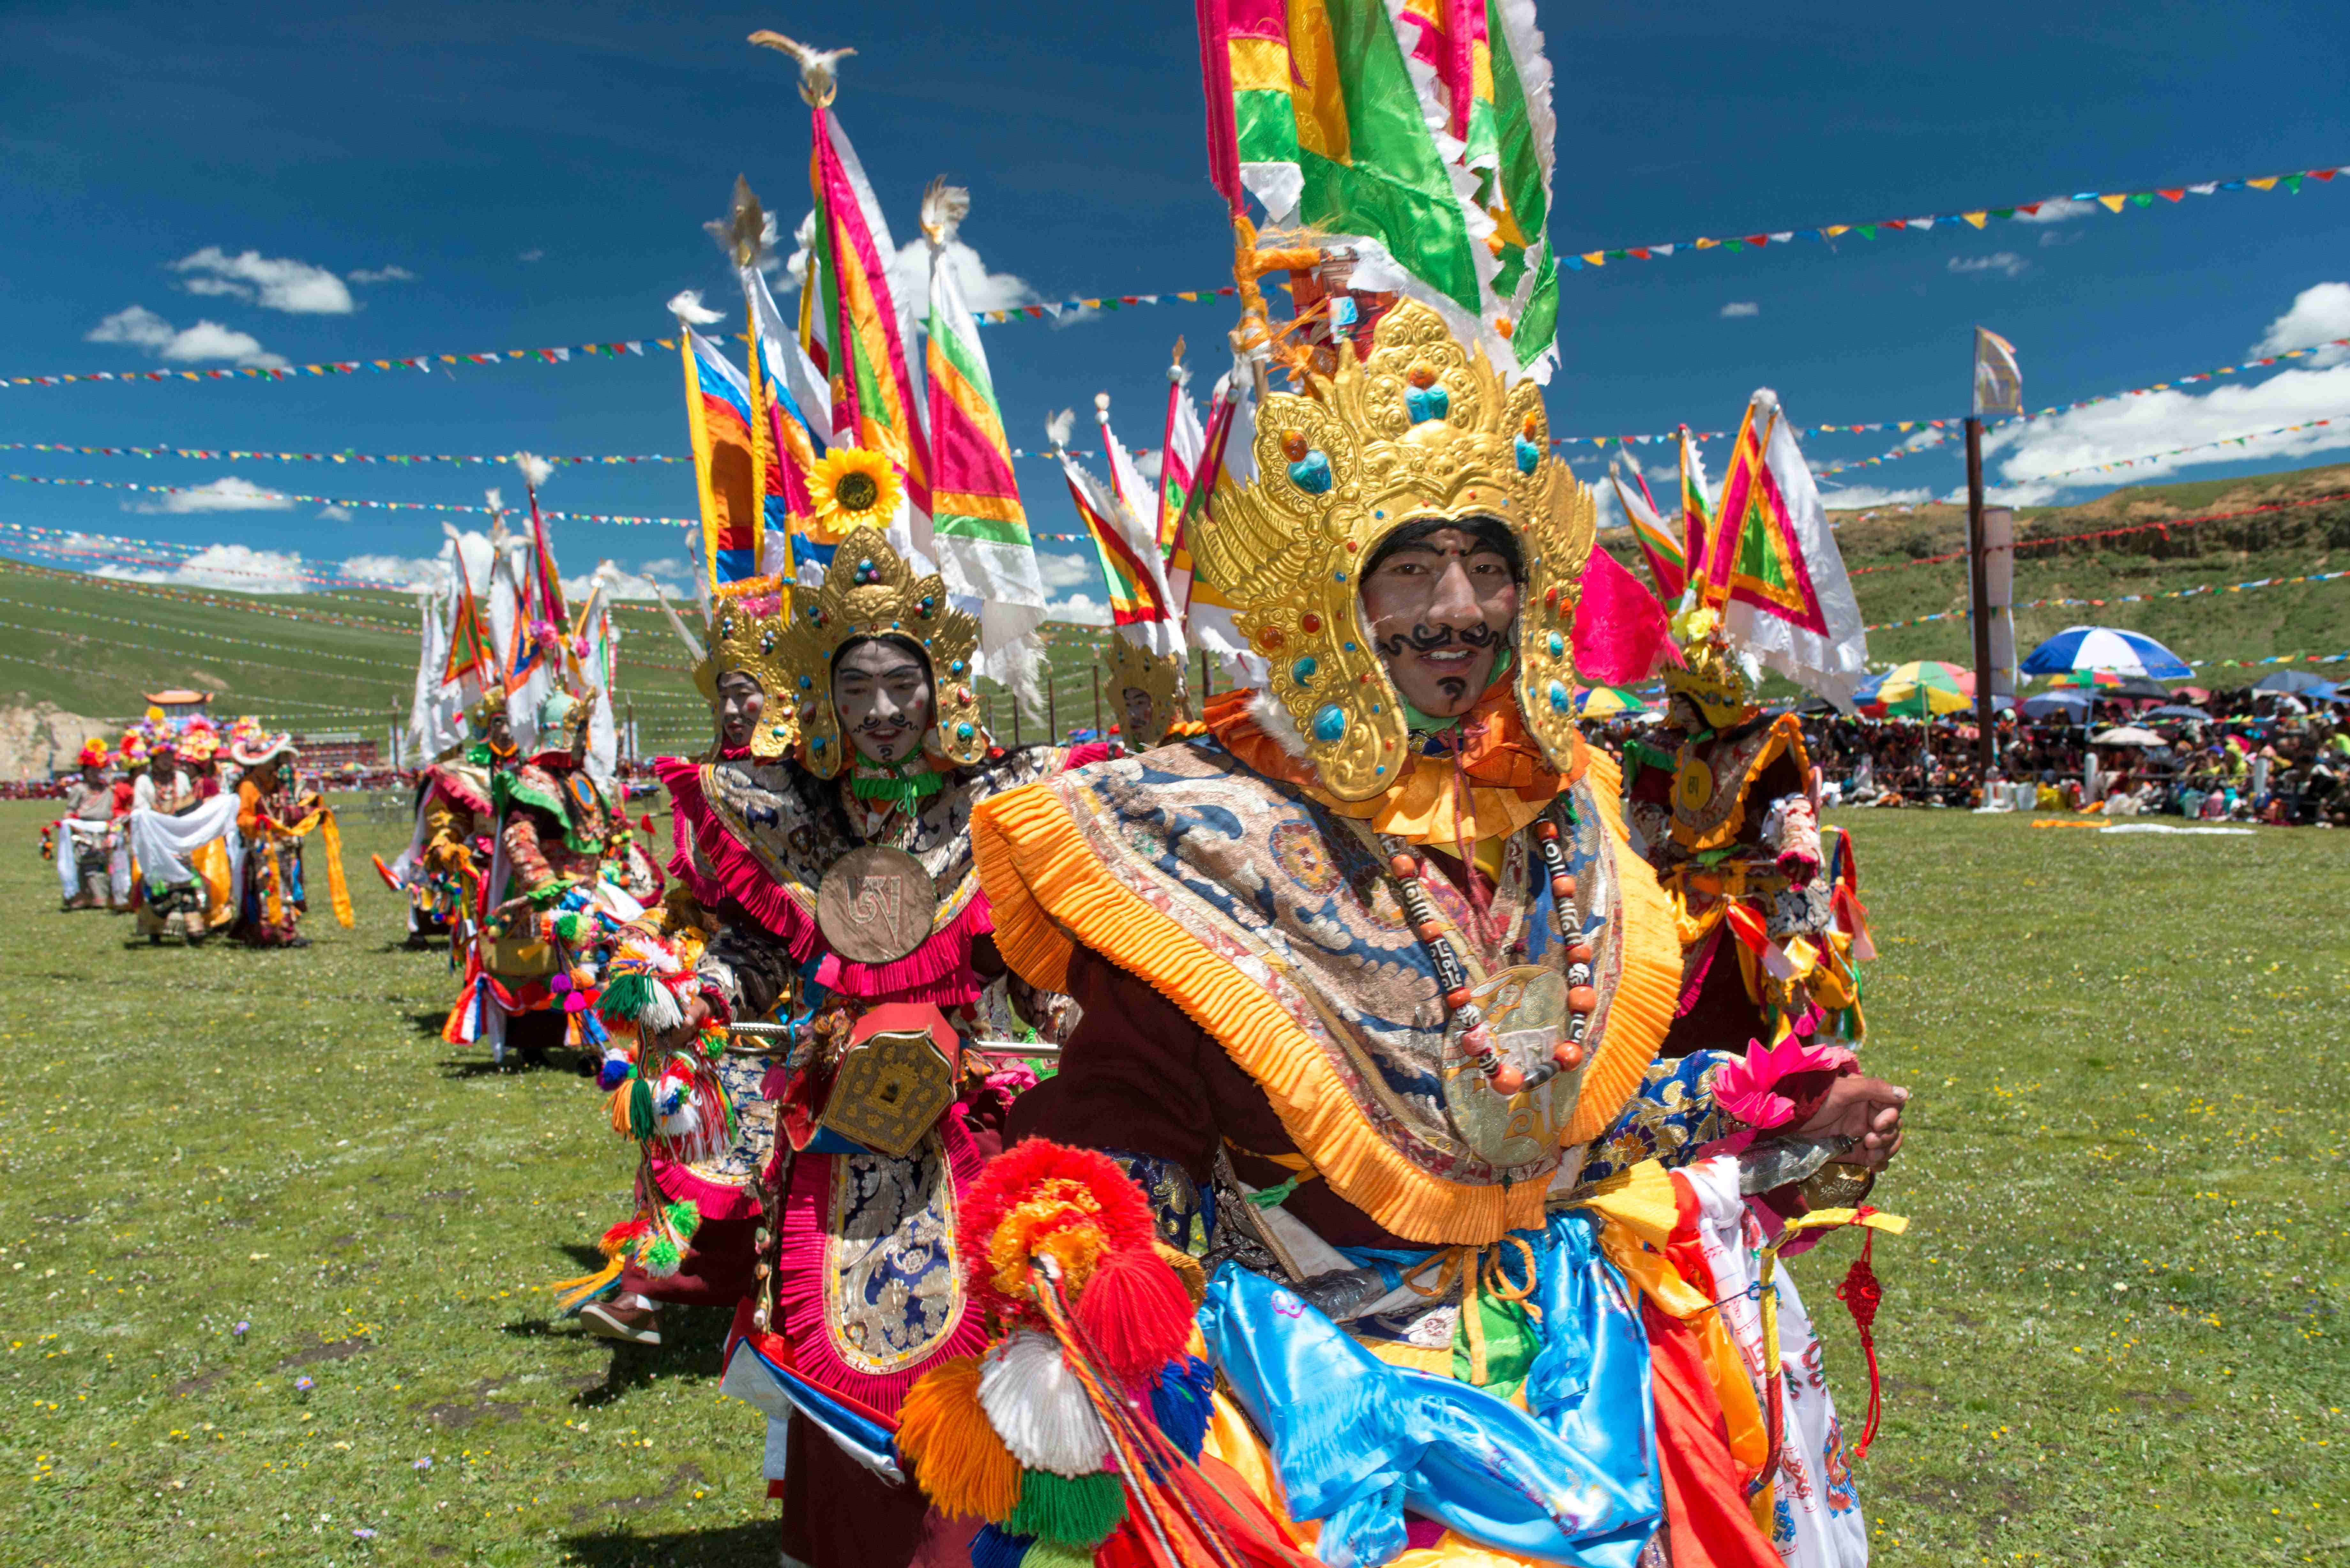 مردم بومی تبت که از اساطیر و طبیعت برای آیینهای خود بهره میگیرند